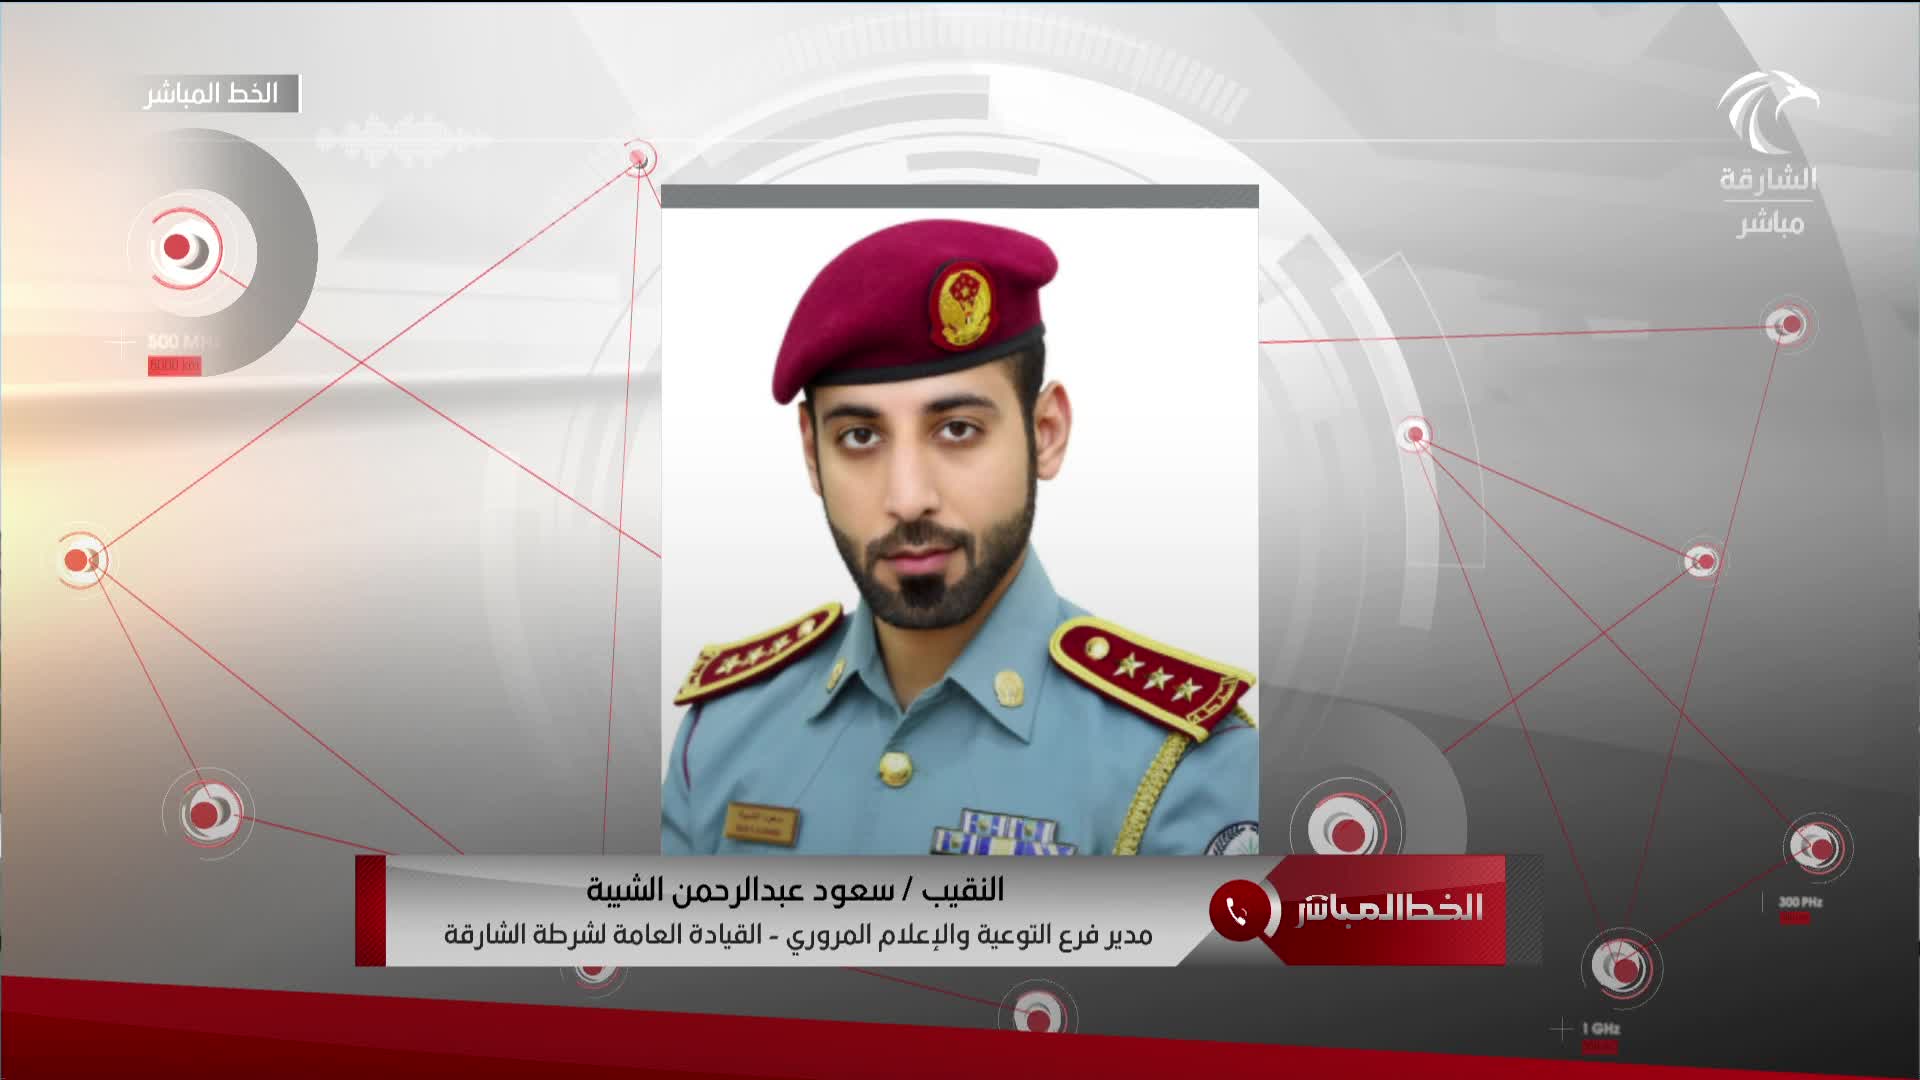 النقيب سعود عبدالرحمن - مدير فرع التوعية والإعلام المروري القيادة العامة لشرطة الشارقة